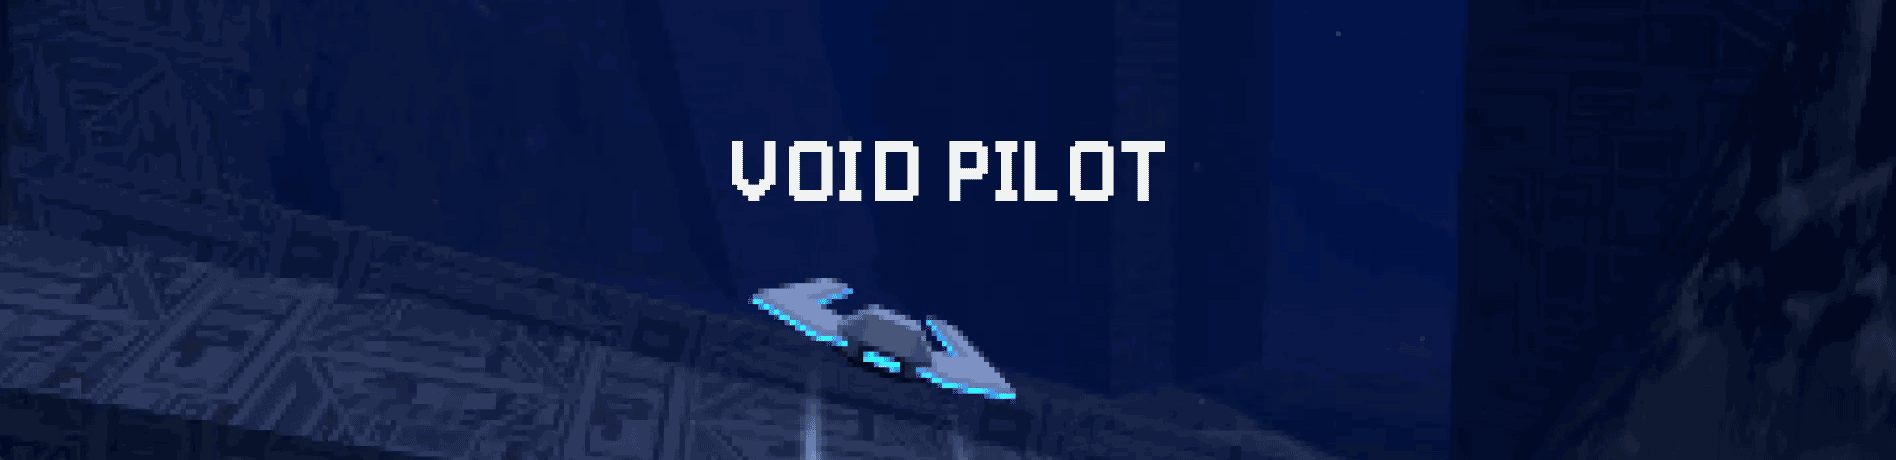 Void Pilot